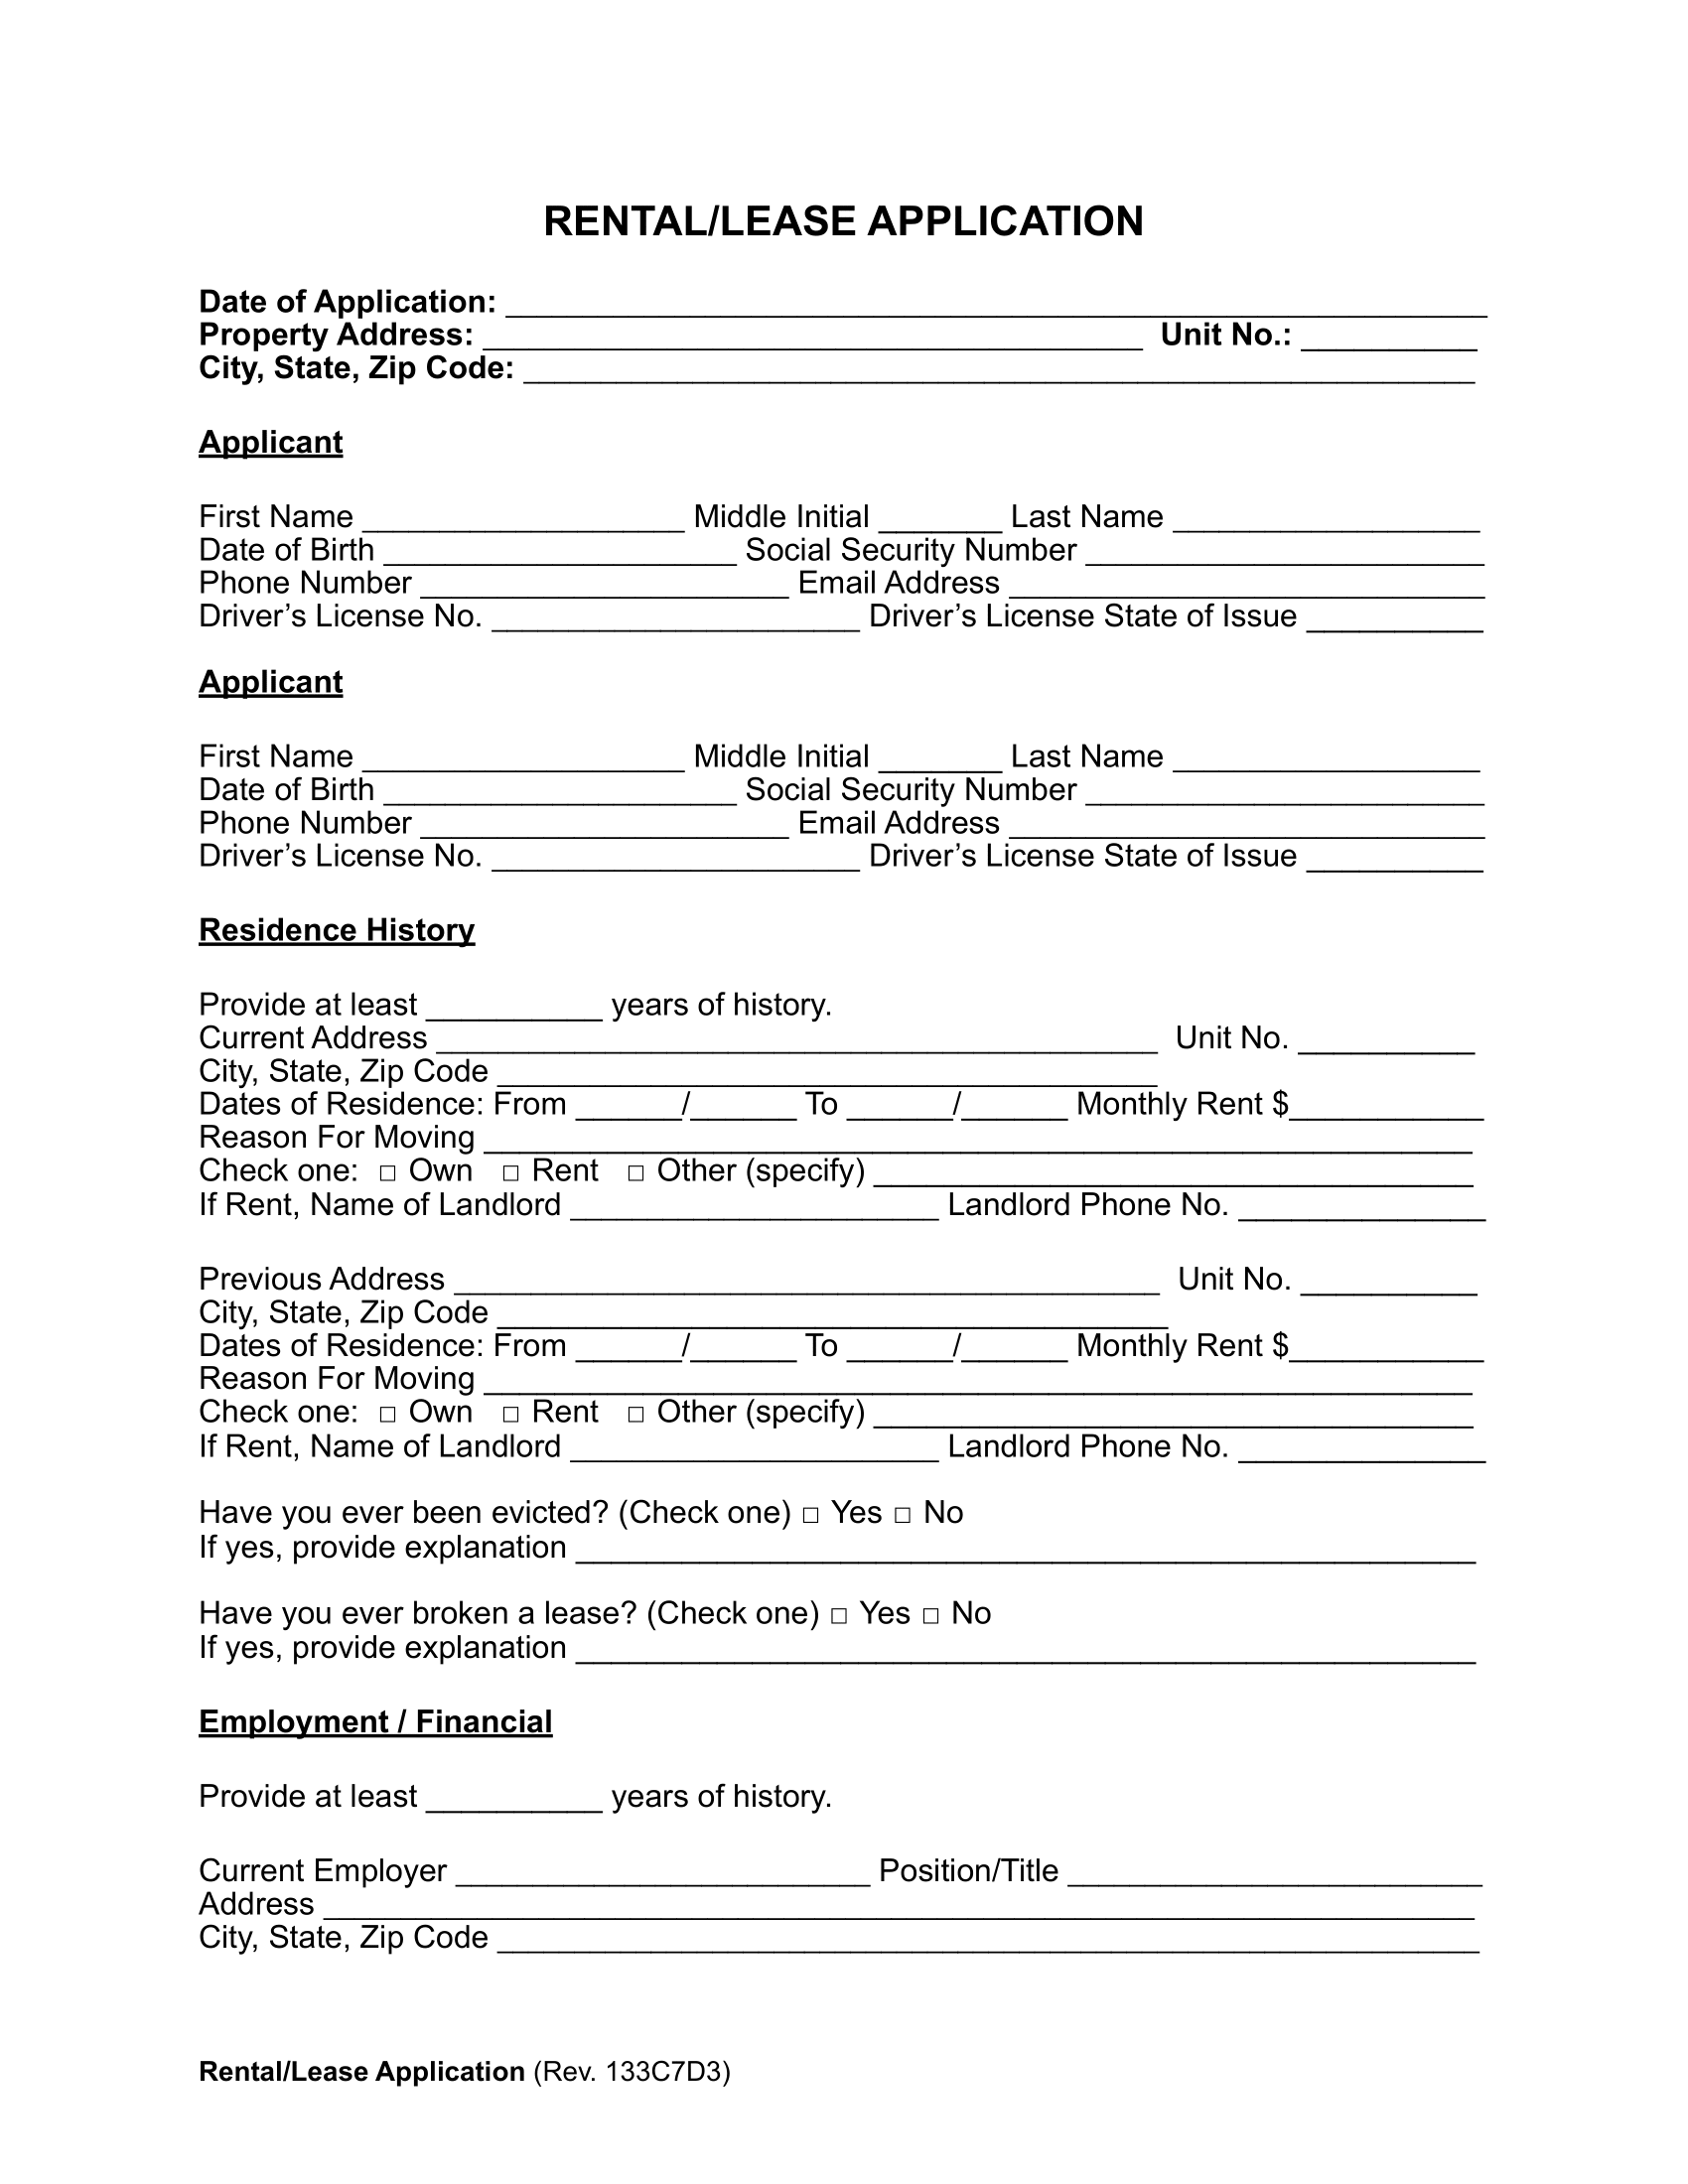 Rental Application Form Sample